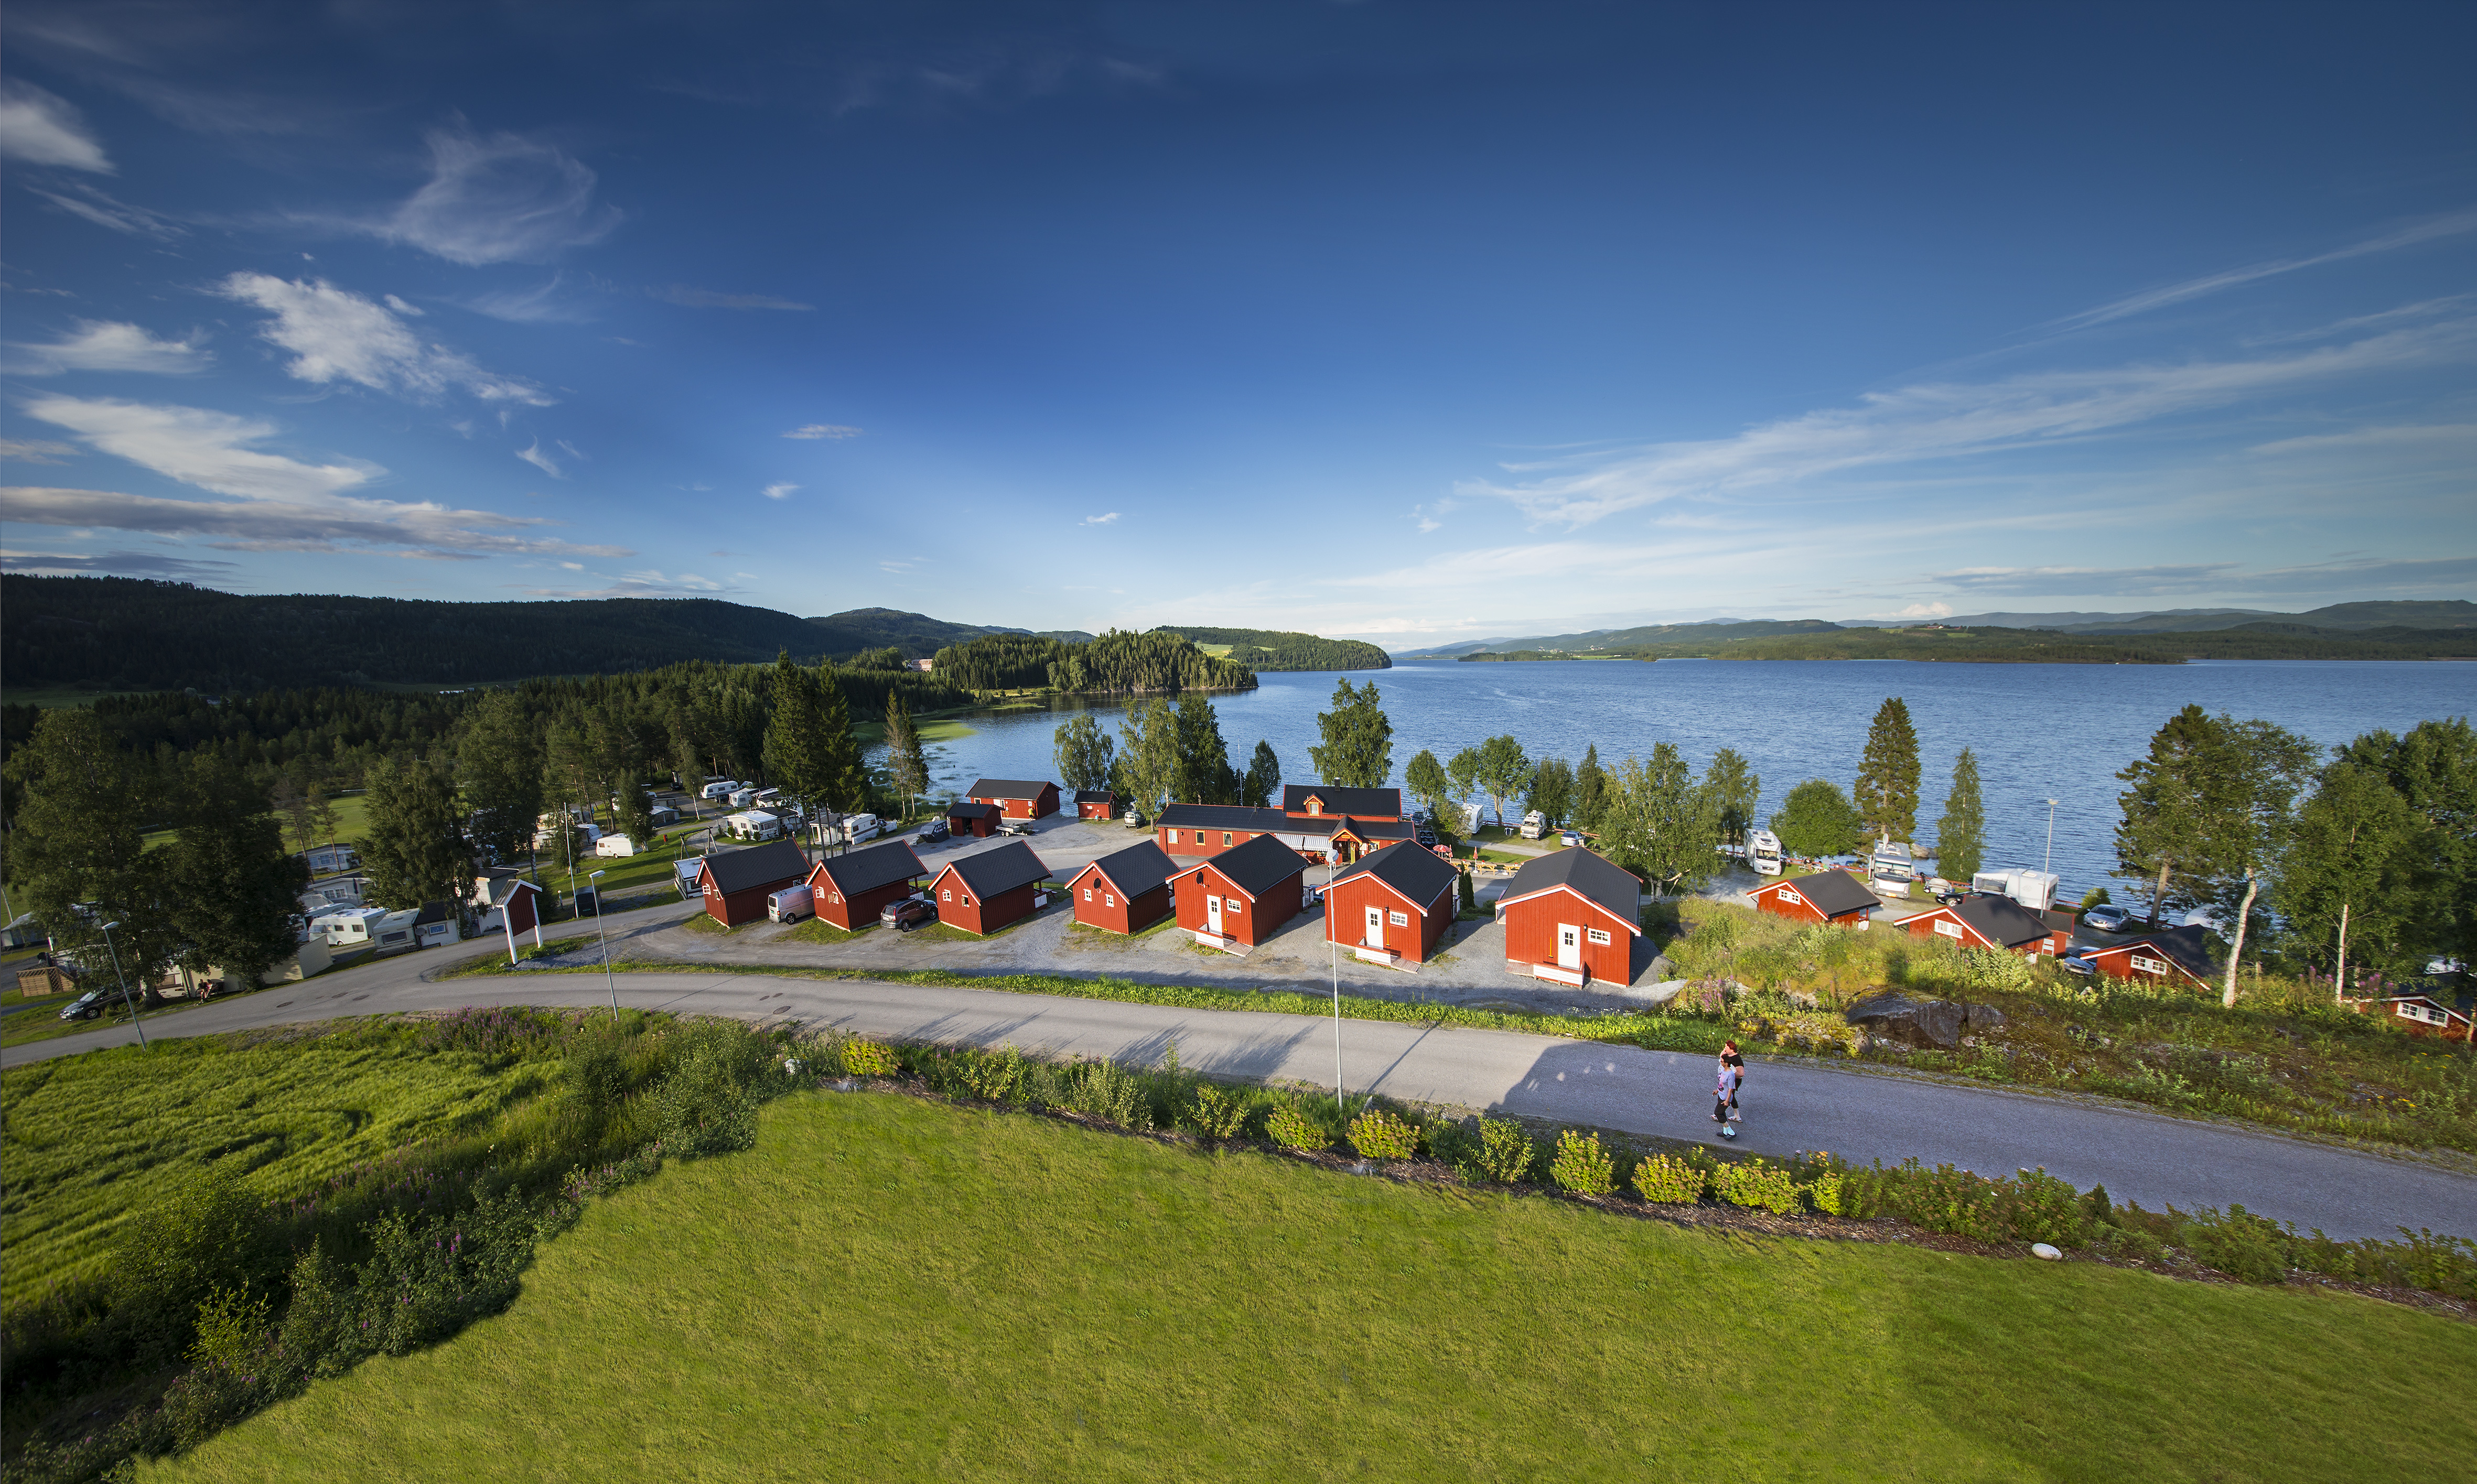 Nasjonal konferanse for camping- og reiselivsnæringen i Stjørdal 6. november 2018